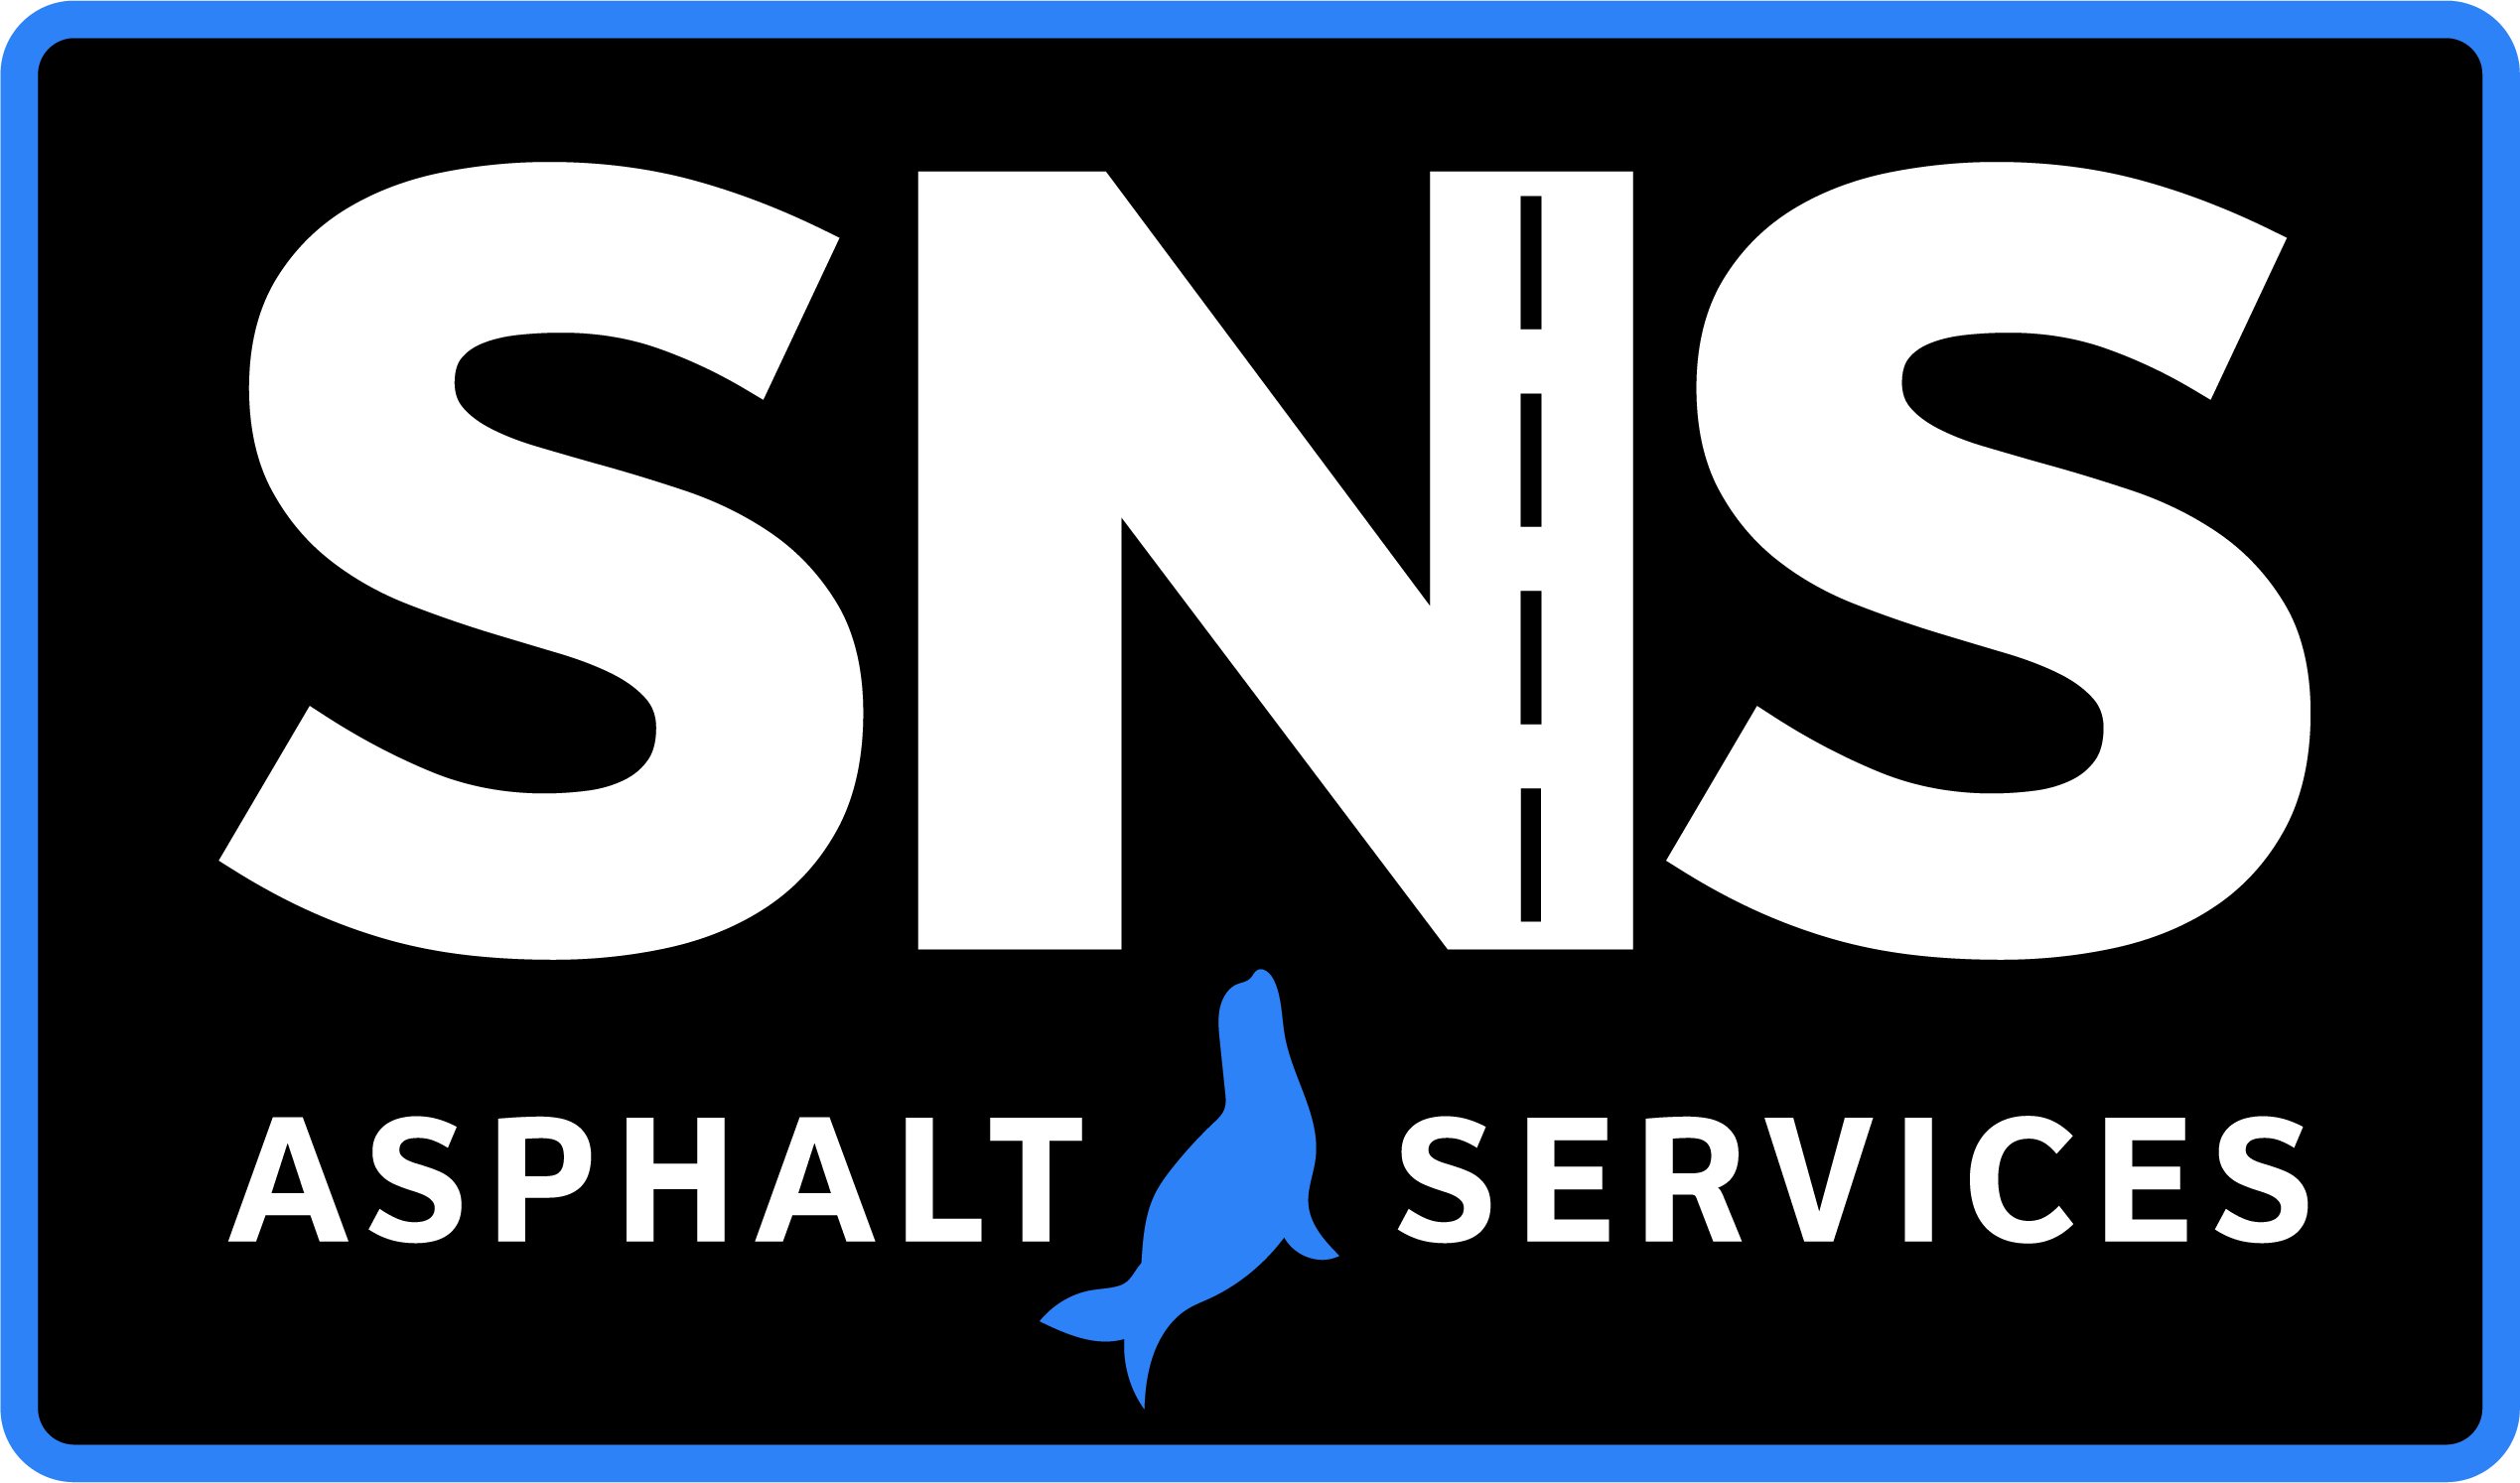 SNS Asphalt Services